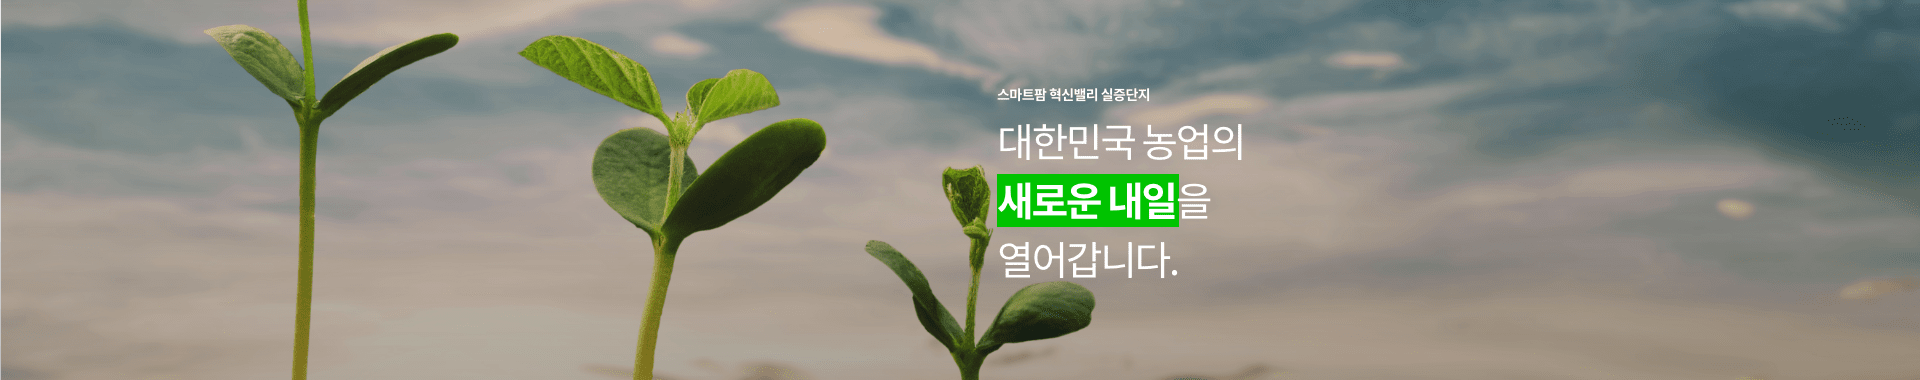 스마트팜 혁신밸리 실증단지 / 대한민국의 농업의 새로울 내일을 열어갑니다.